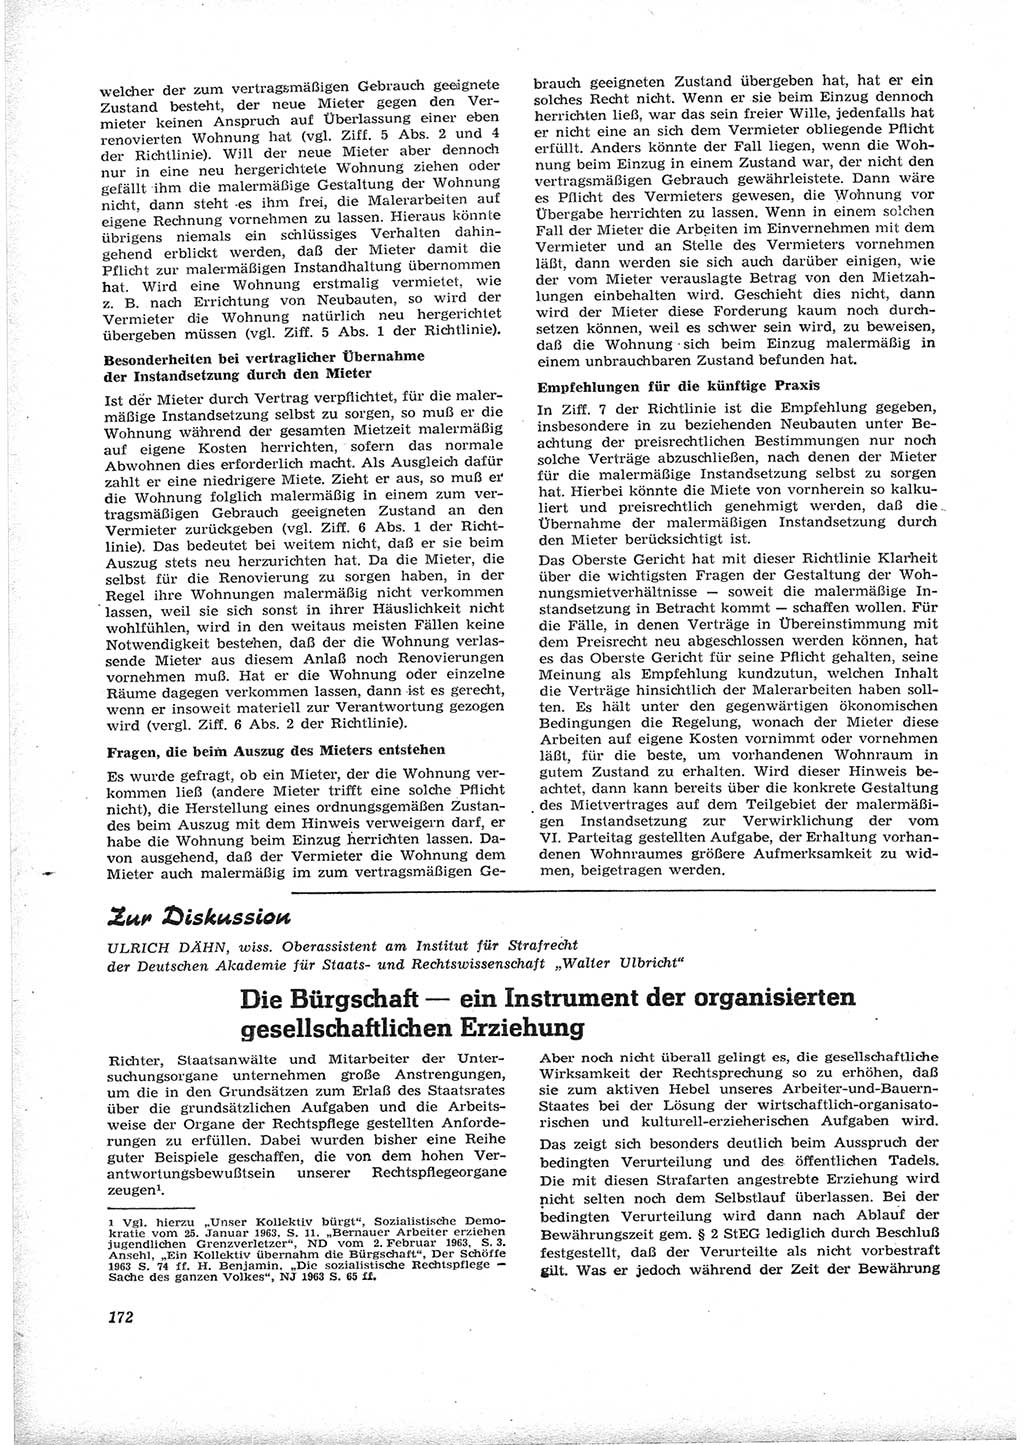 Neue Justiz (NJ), Zeitschrift für Recht und Rechtswissenschaft [Deutsche Demokratische Republik (DDR)], 17. Jahrgang 1963, Seite 172 (NJ DDR 1963, S. 172)